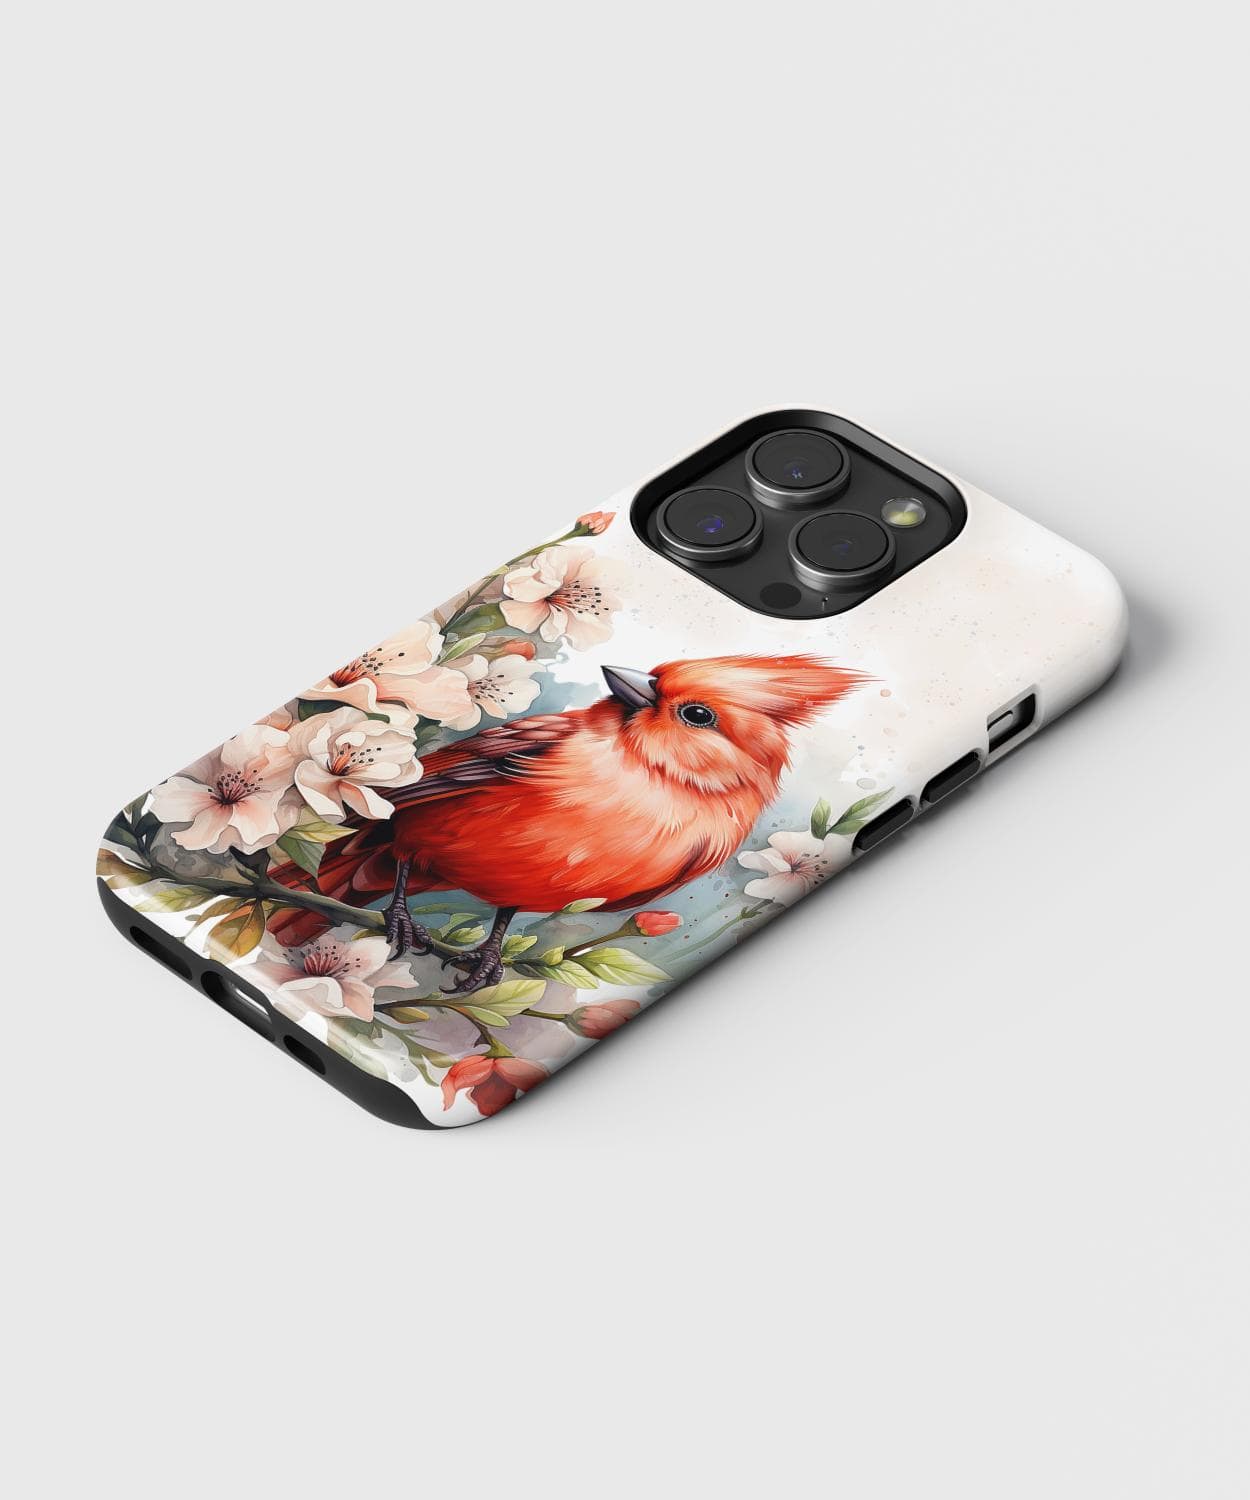 Cardinal iPhone Case